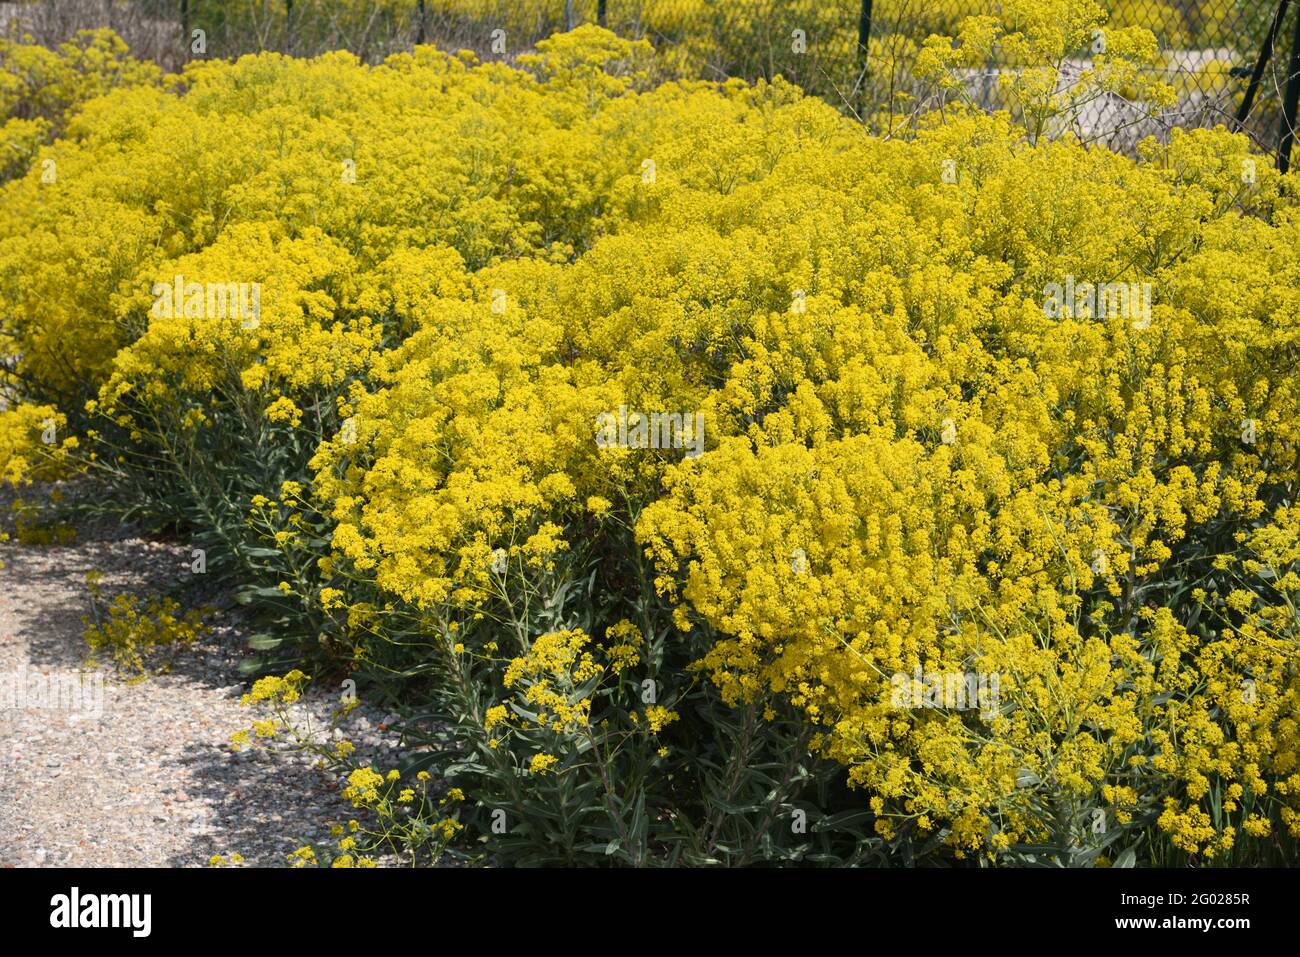 Masse an blütendem Gemeinen Ragwort, jacobaea vulgaris syn Senecio jacobaea, alias Stinking Willie oder Tansy Ragwort, das auf Waste Land oder Wasteland wächst Stockfoto